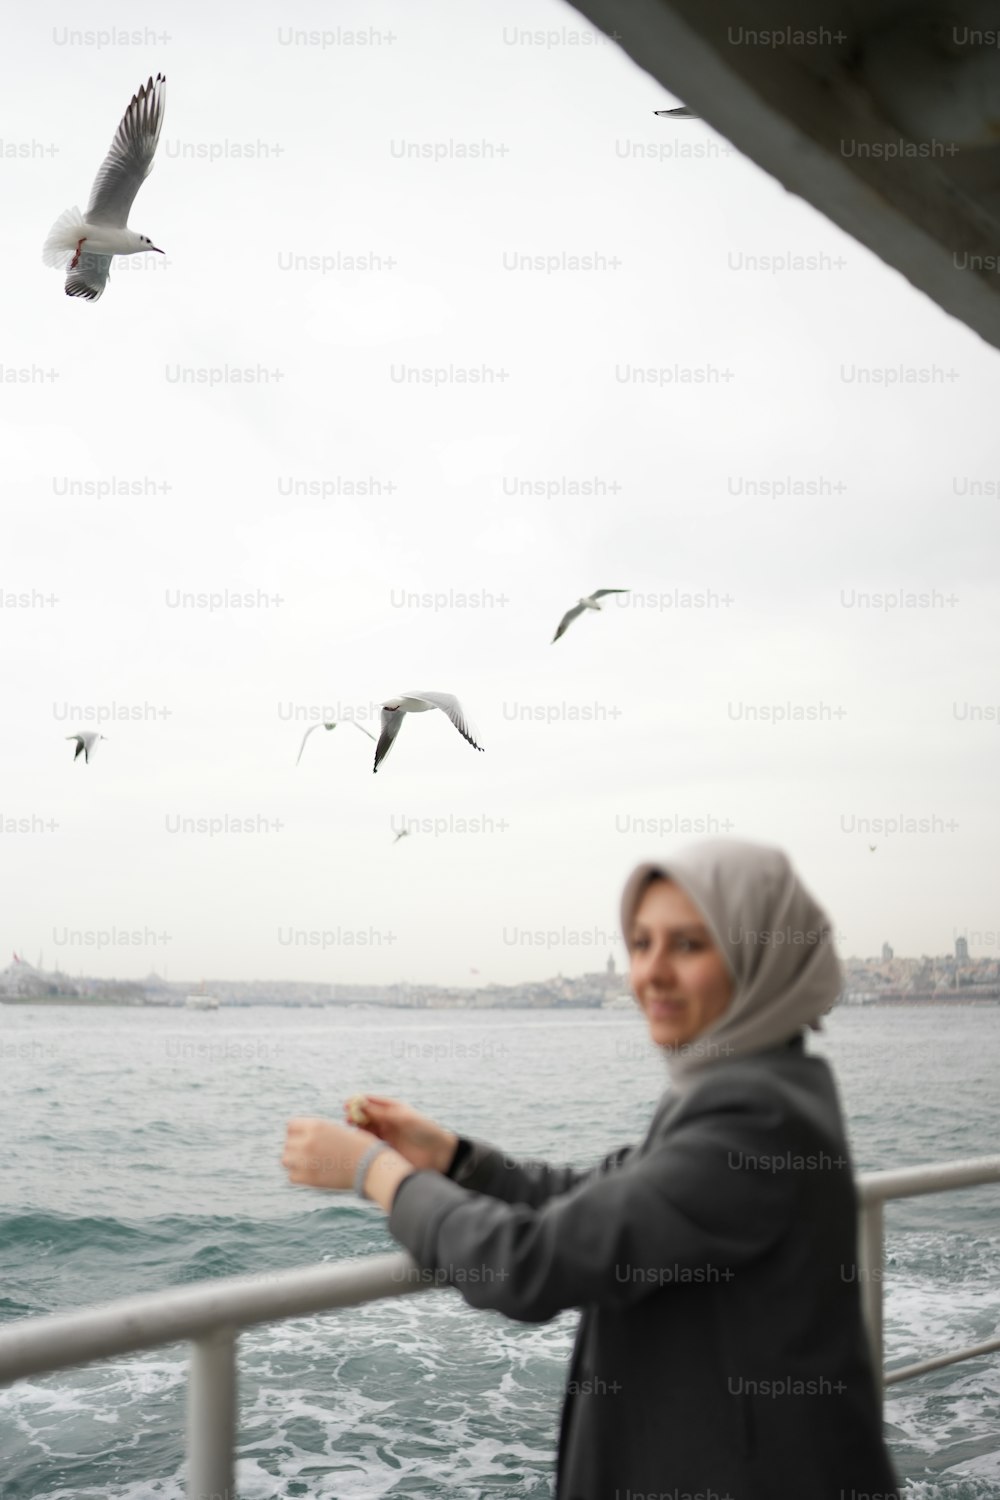 uma mulher de pé em um barco olhando para gaivotas